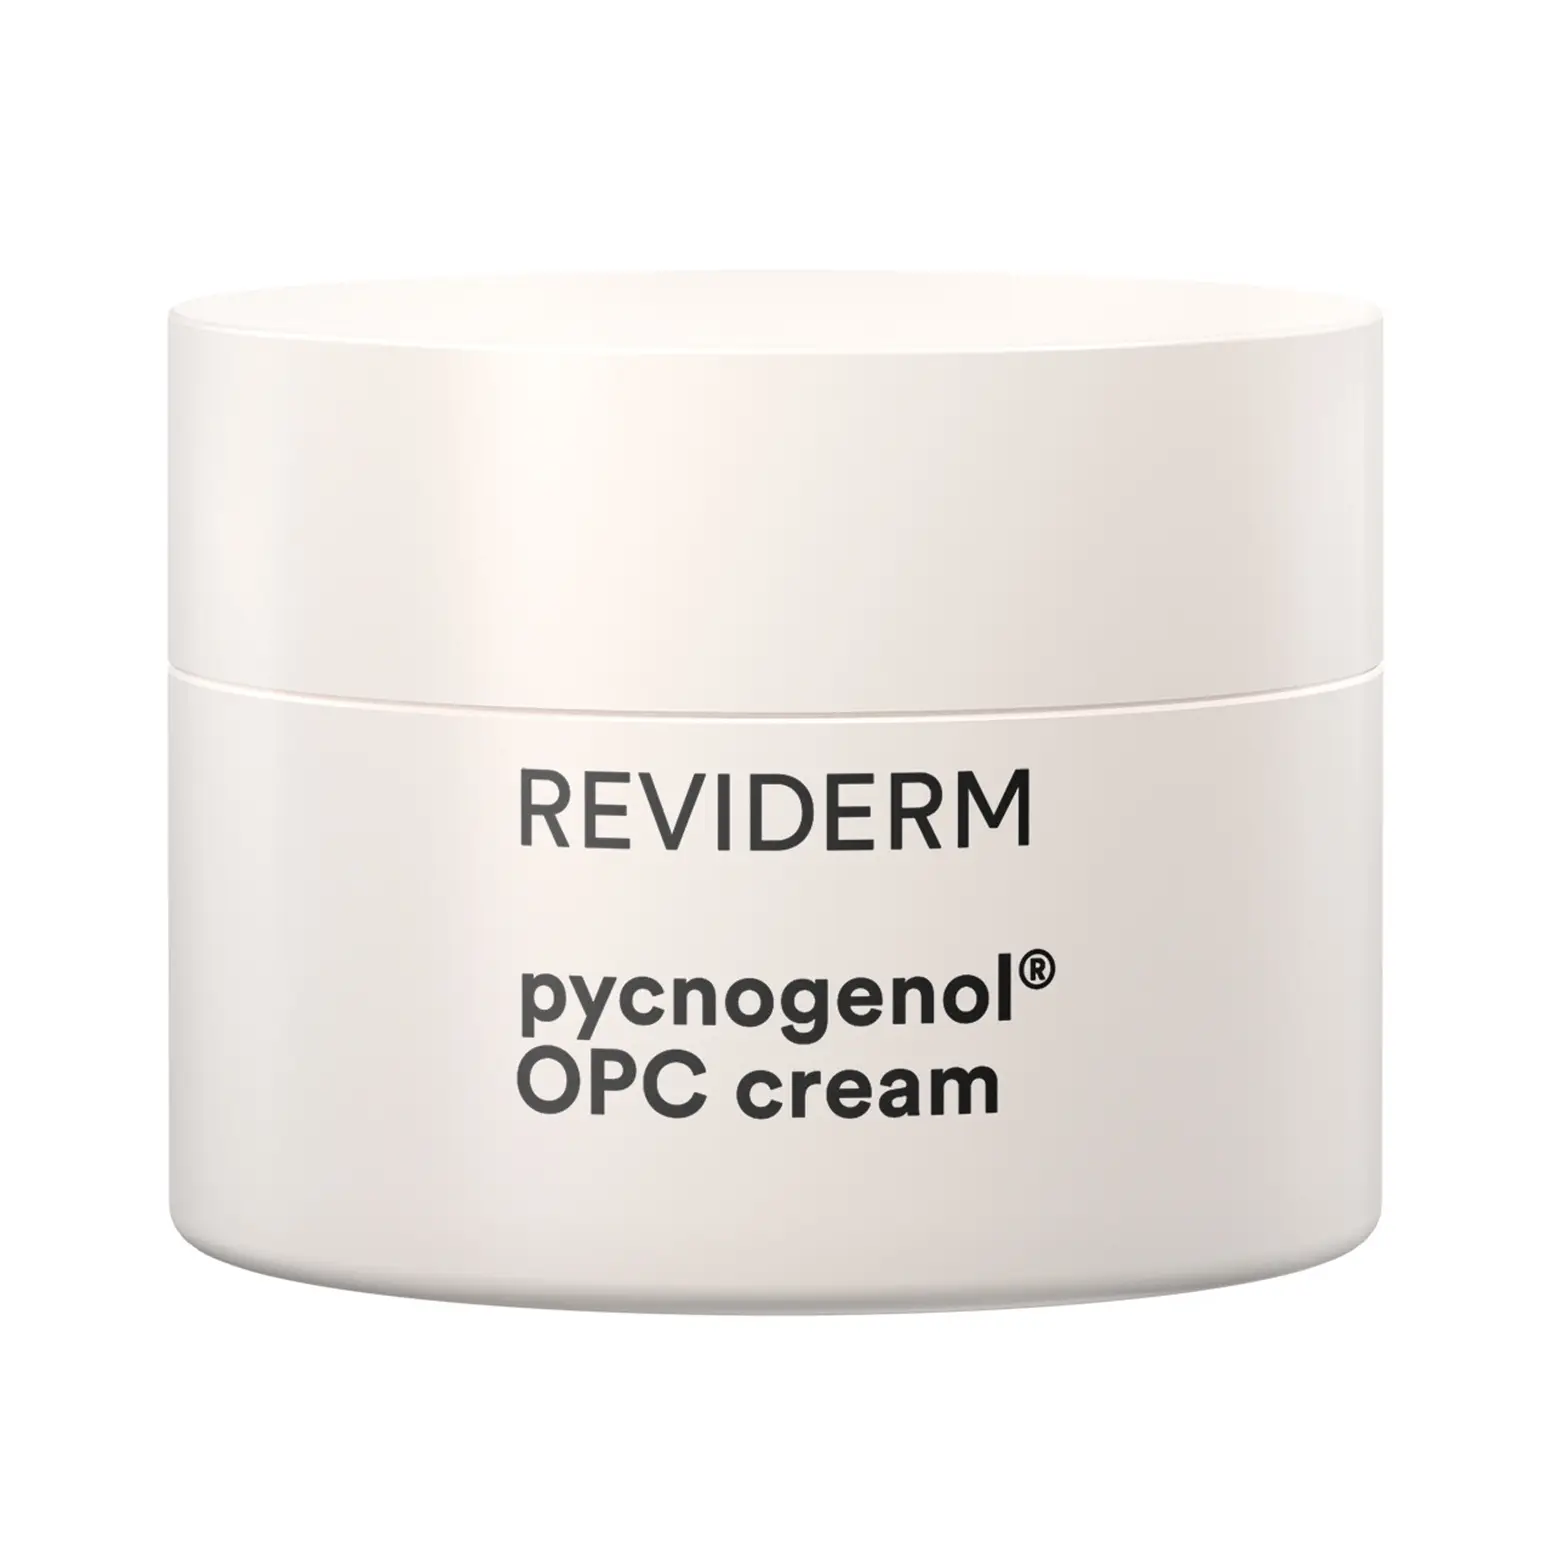 Reviderm Pycnogenol OPC Cream anti rimpel creme